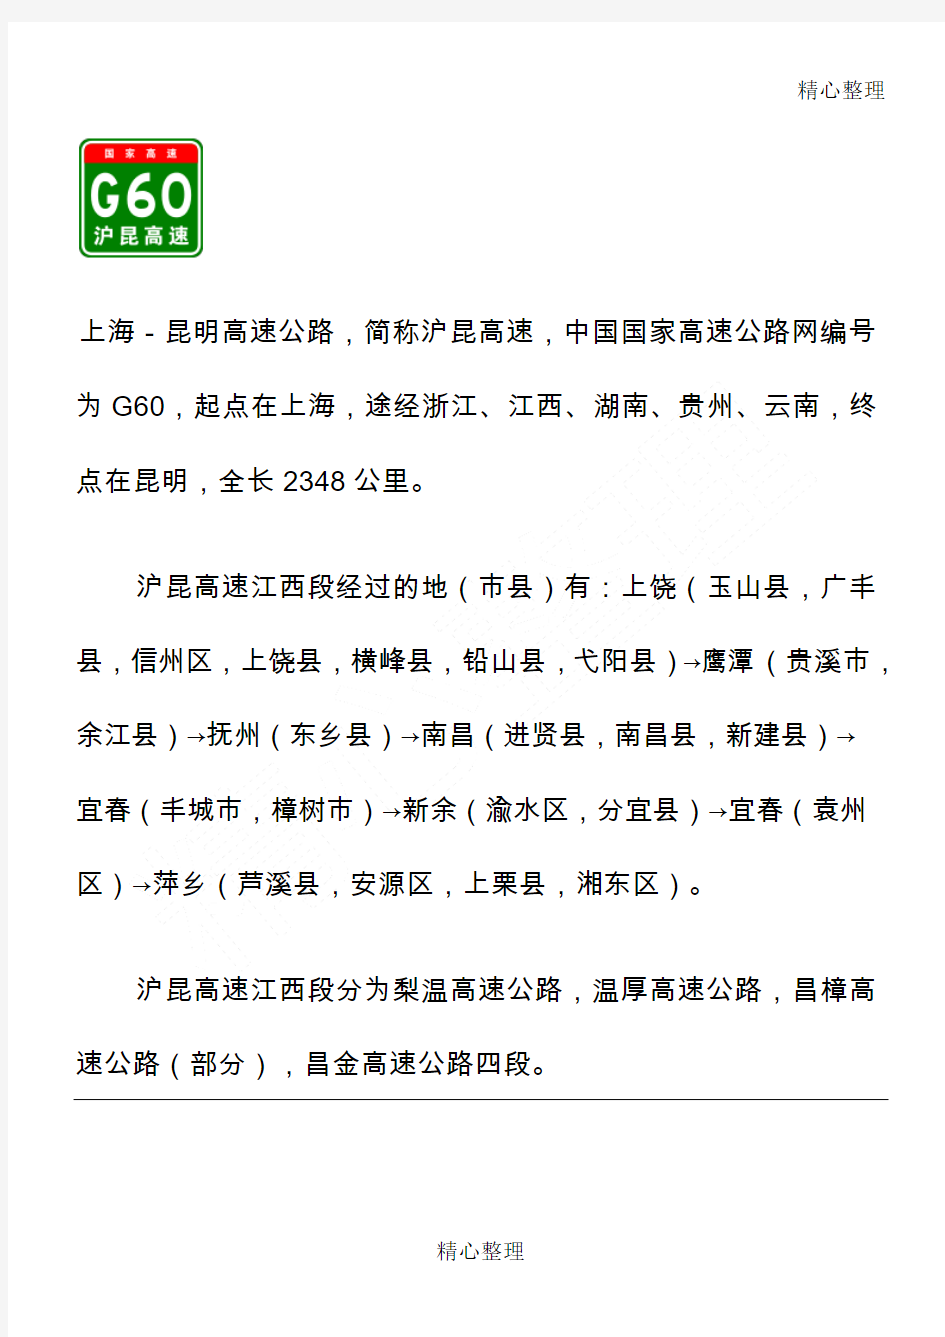 G60沪昆高速(江西段)出入口、服务区、里程数及风景区